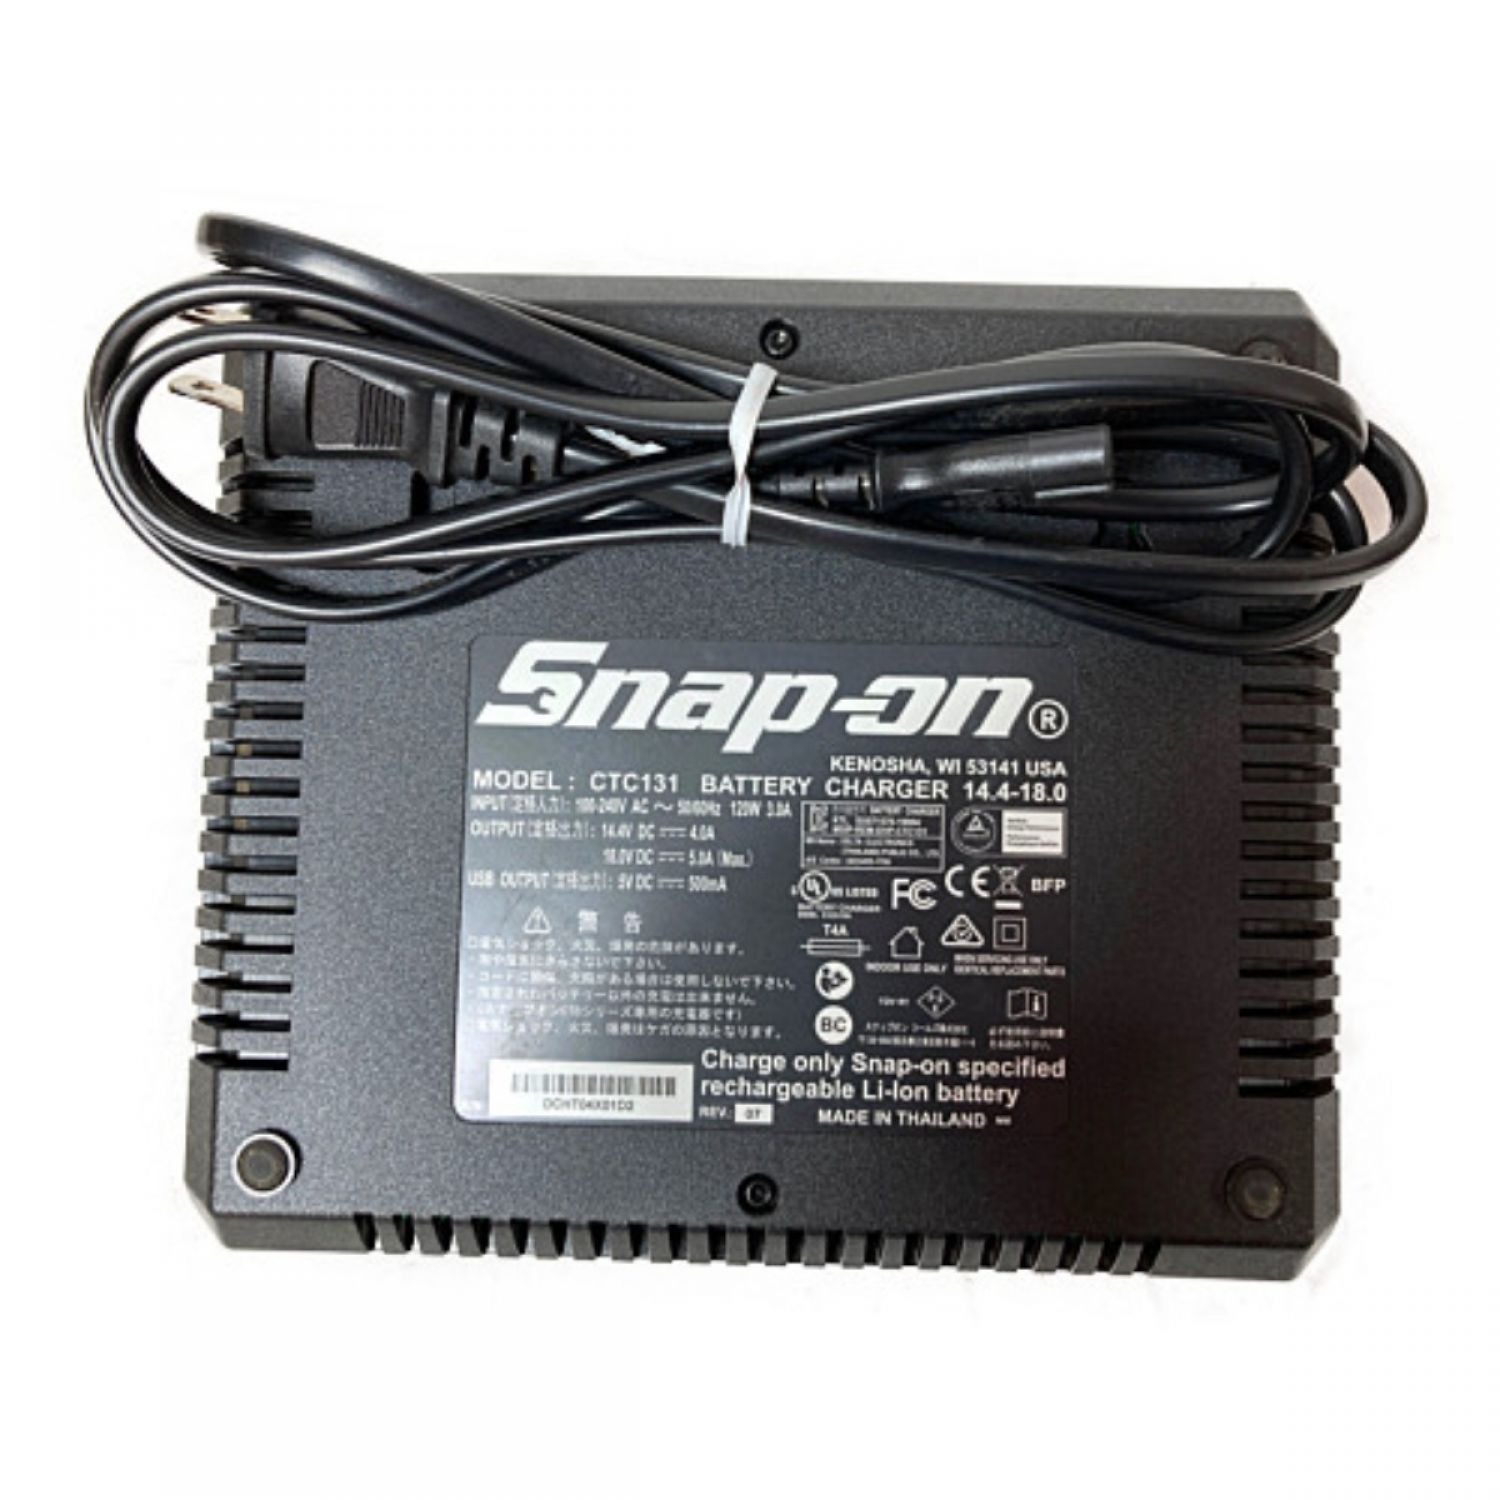 Snap-on スナップオン CT7850 コードレスインパクトレンチ